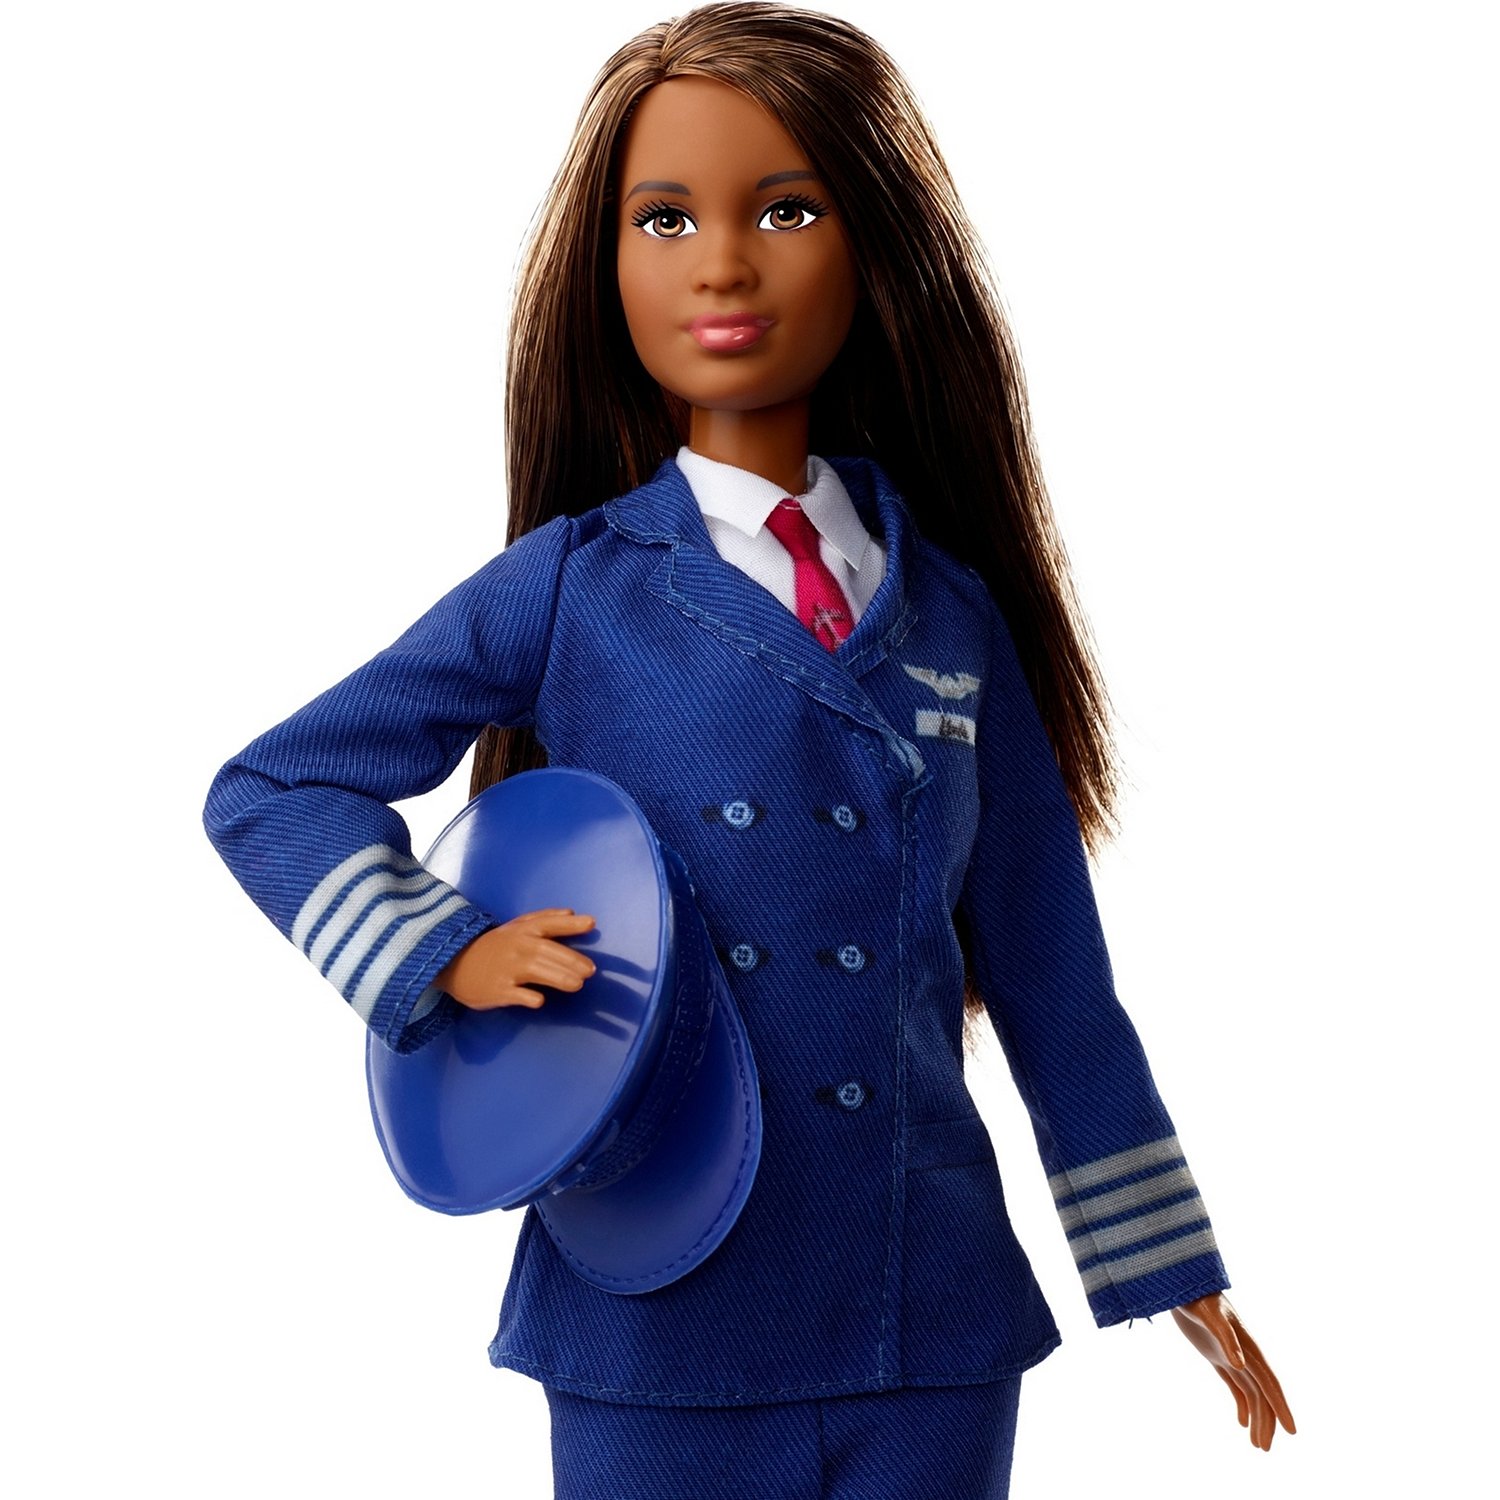 Кукла Barbie Кем быть? Пилот FJB10